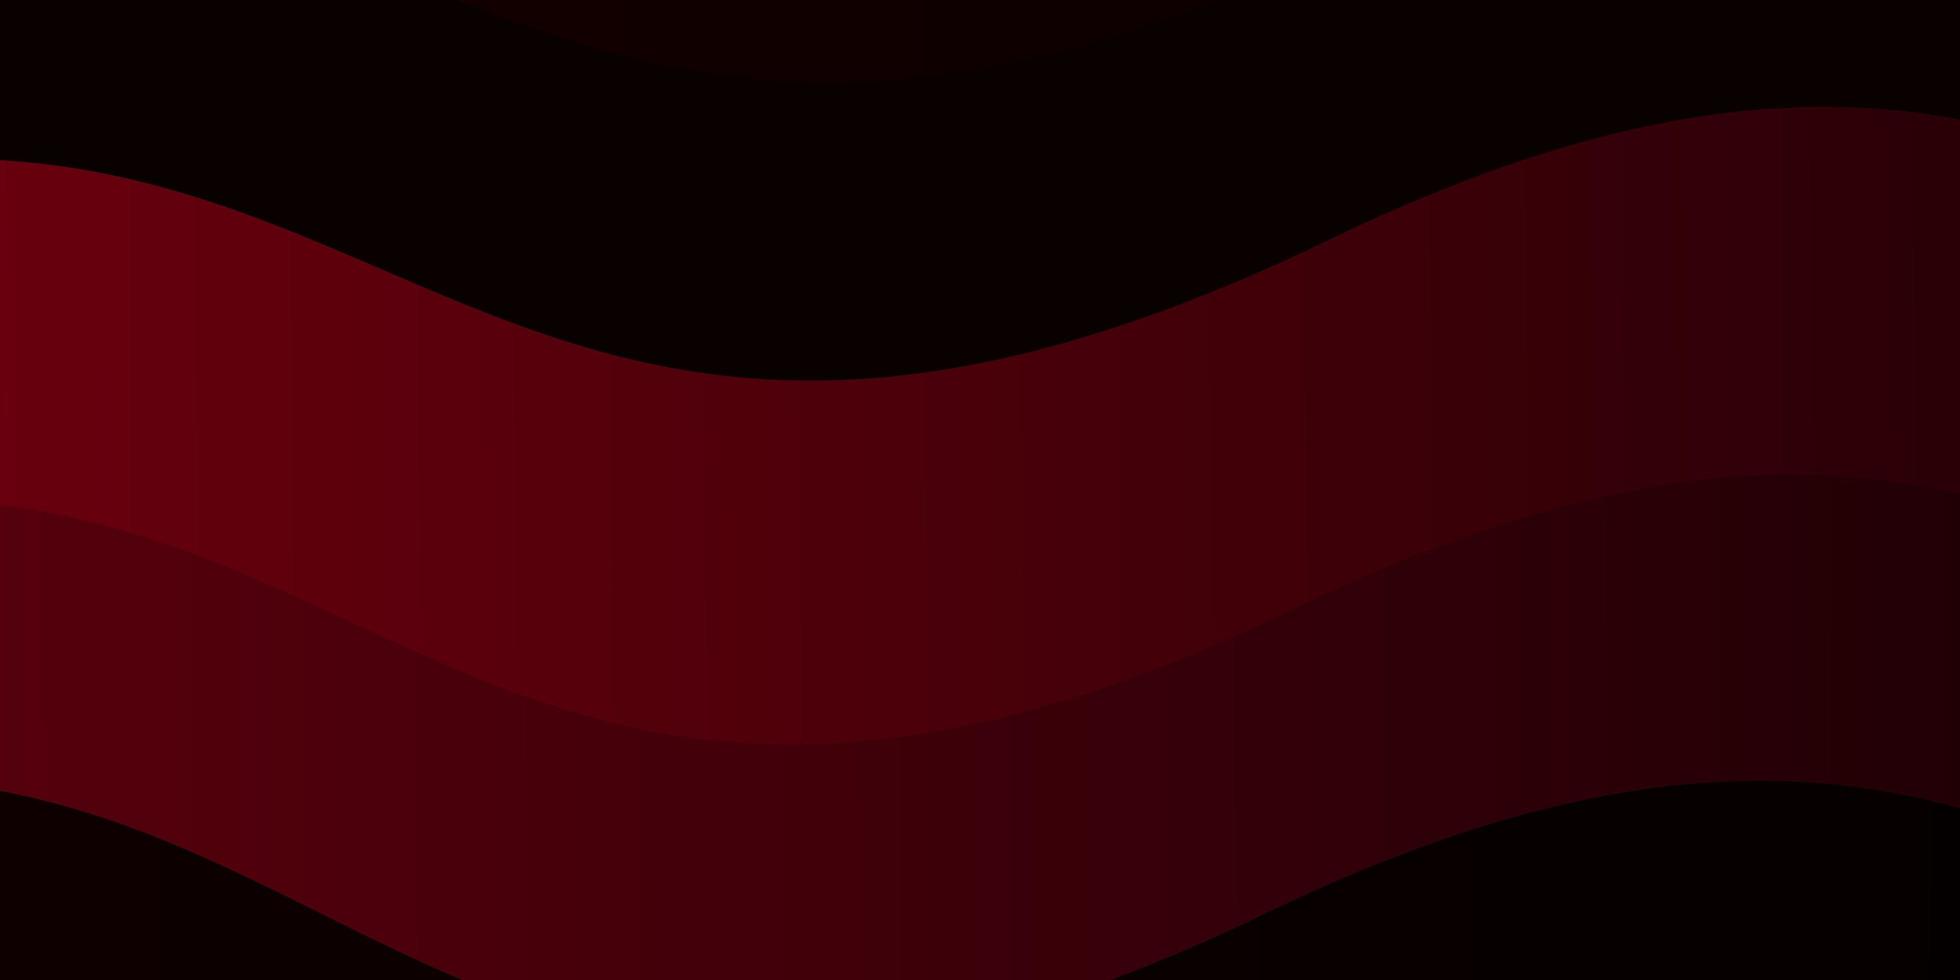 modello vettoriale rosso scuro, giallo con linee curve. illustrazione in stile astratto con gradiente curvo. modello per libretti, volantini.